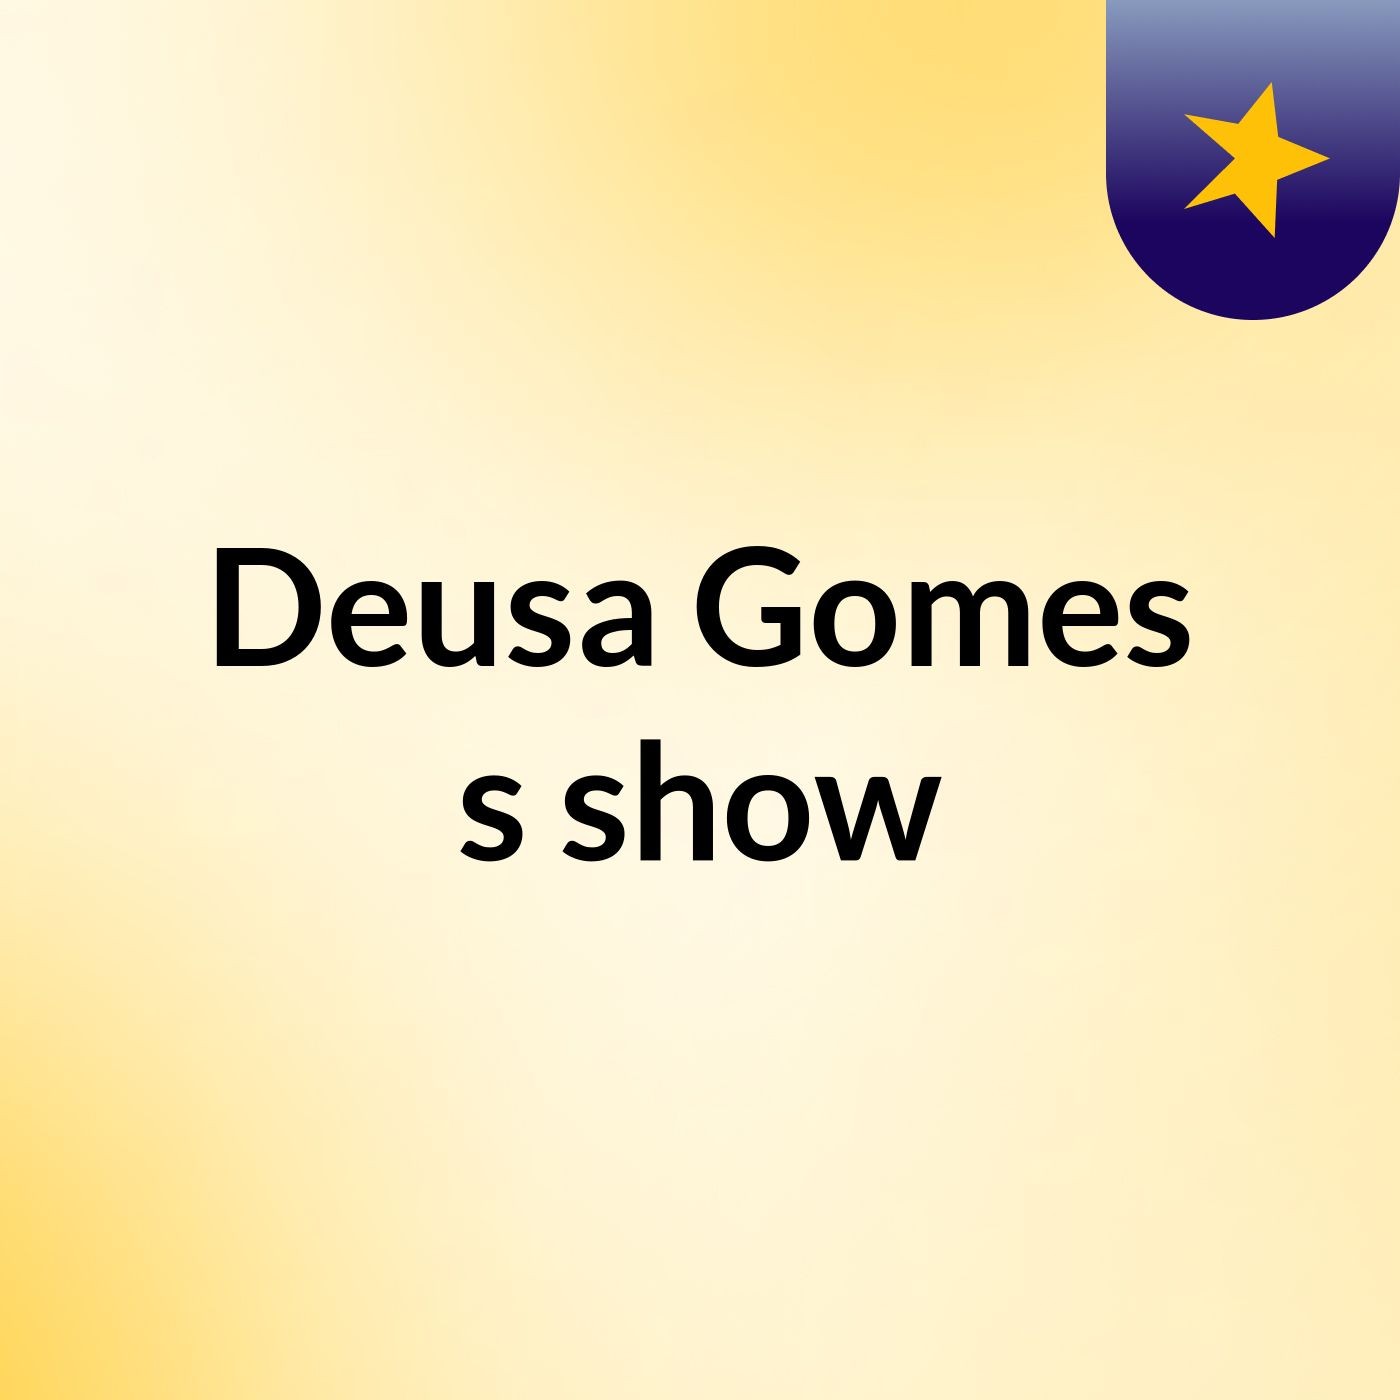 Deusa Gomes's show